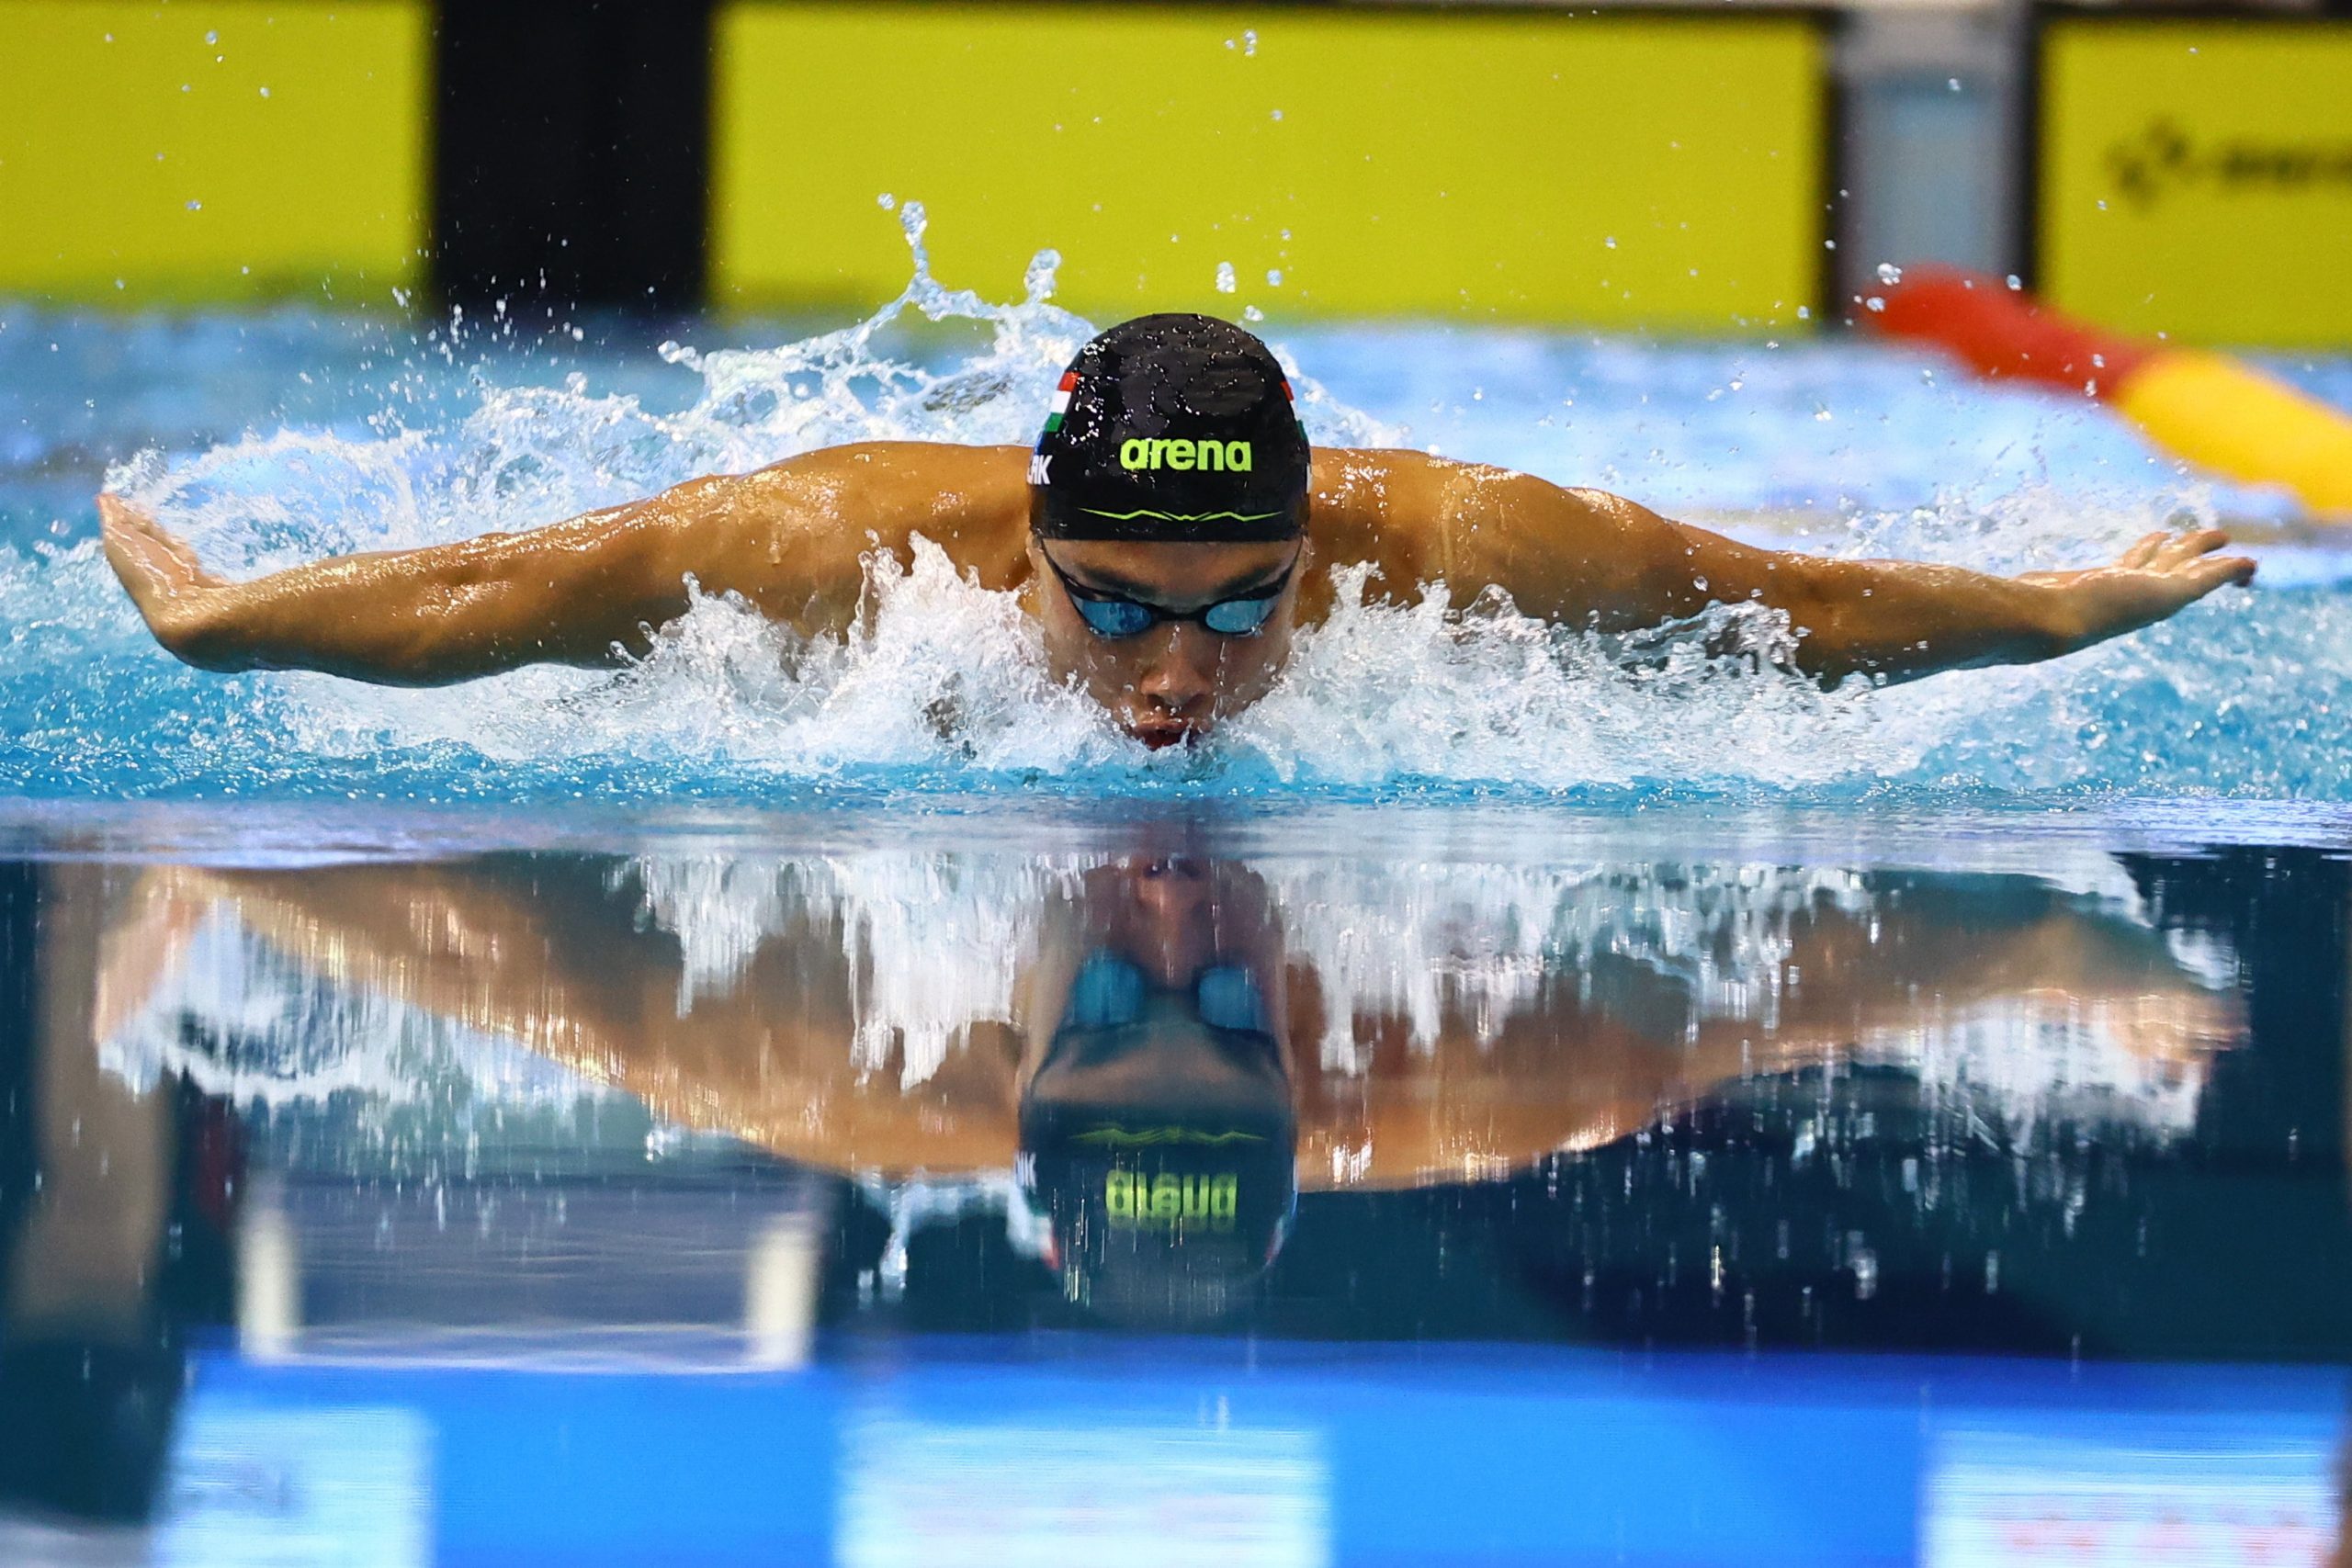 Schwimm-WM 2022: Ungarische Schwimmer erwarten 3-4 Medaillen, mindestens eine Gold